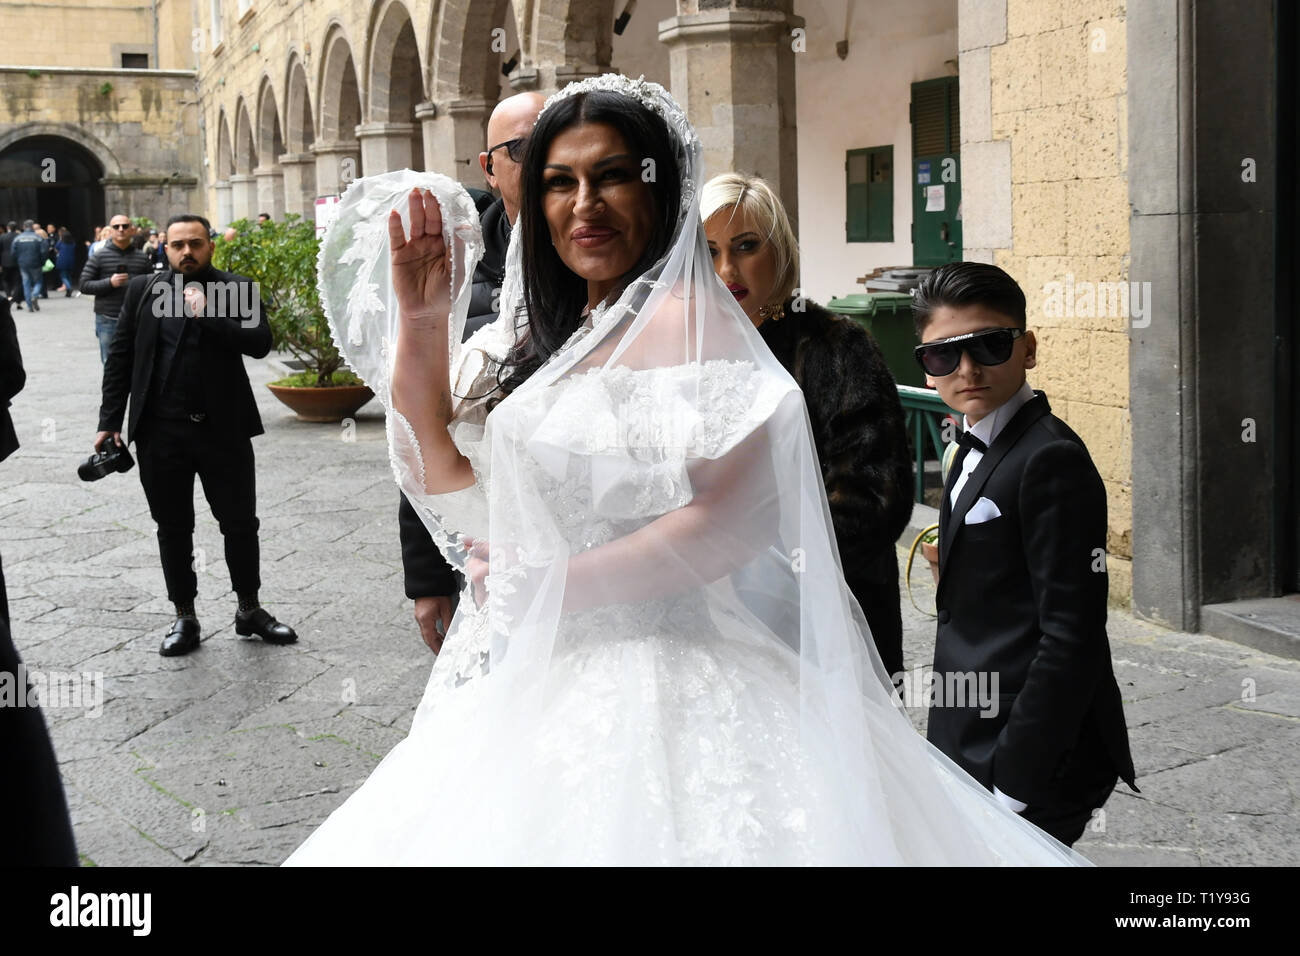 Maschio Angioino' Napoli 03/28 2019 Il Matrimonio di Tony Colombo con Tina  Rispoli nella foto: Tina Rispoli Foto stock - Alamy